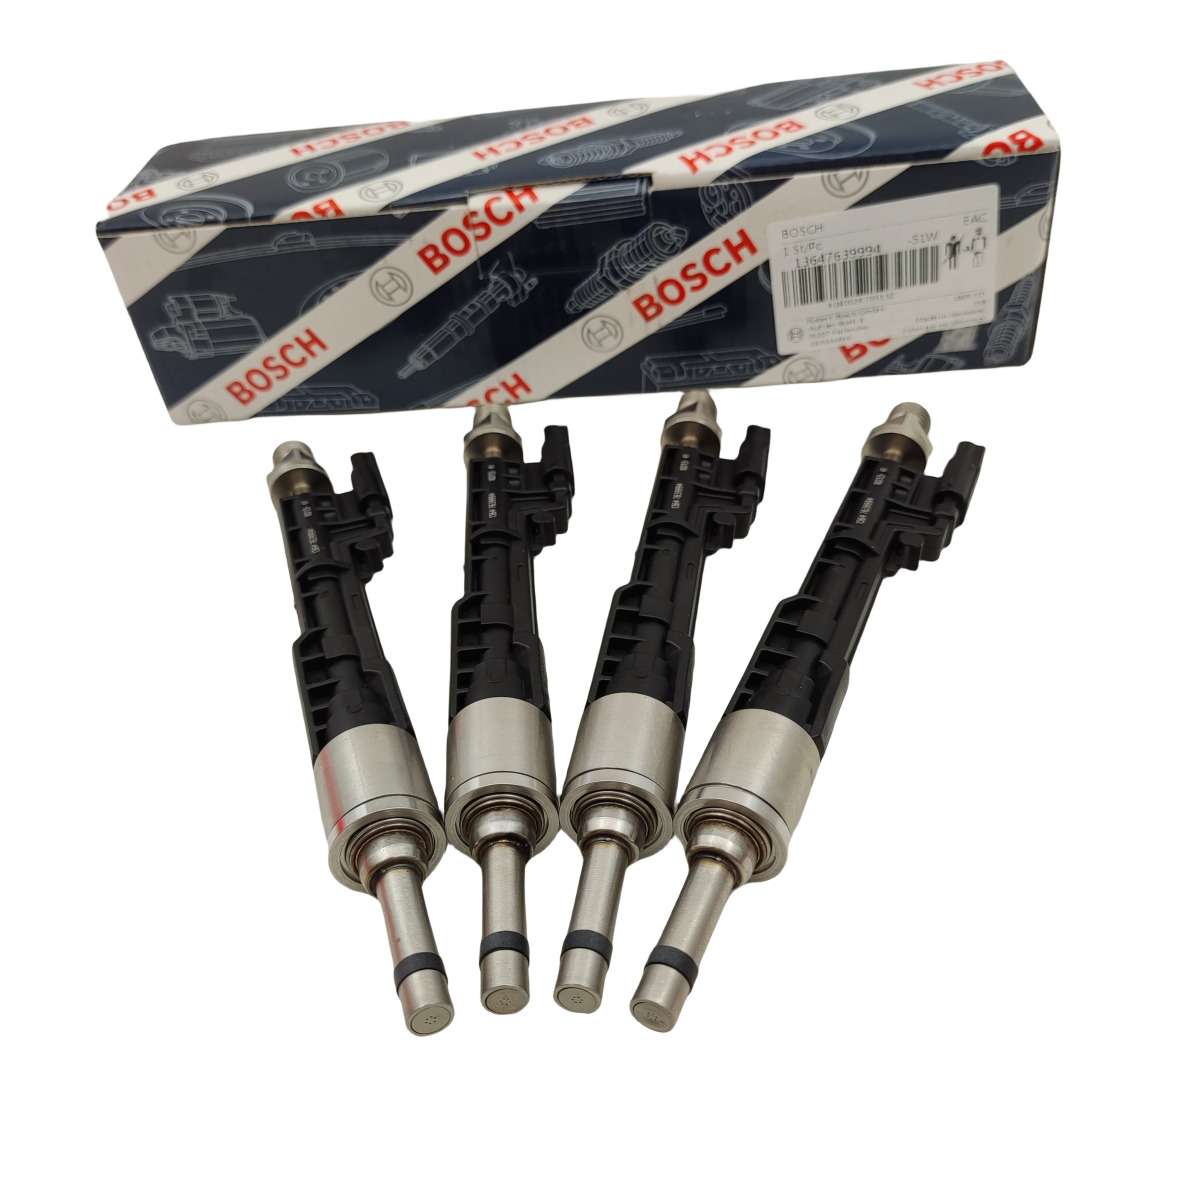 4PCS Fuel Injectors Bosch 62825 Fits For 228i F22 F23 320i xDrive F30 F33 EU6